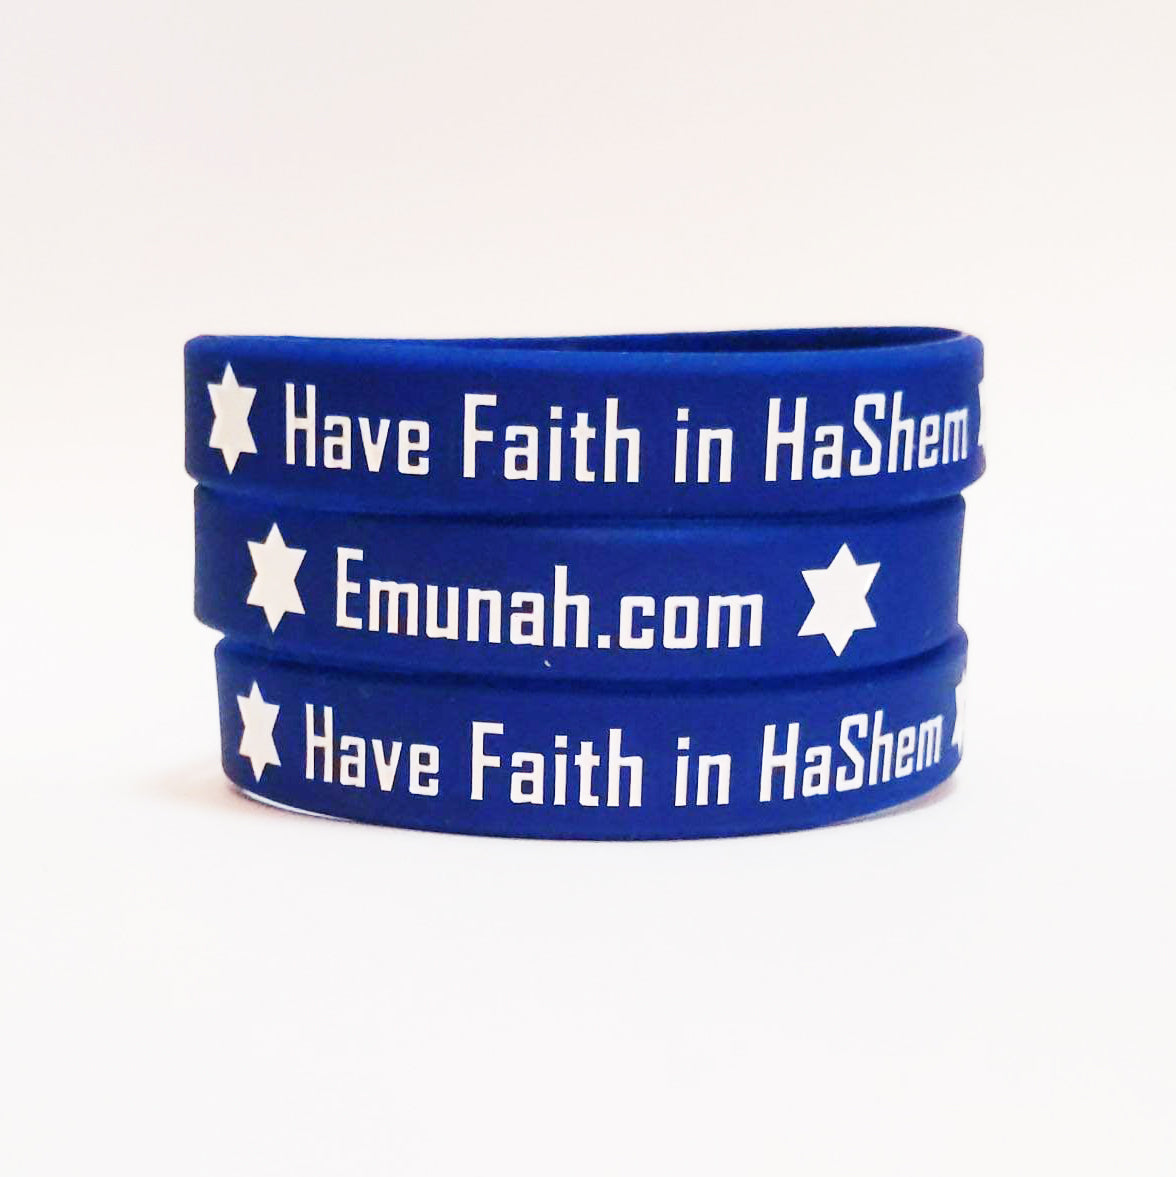 Have Faith in HaShem Emunah.com Silicone Bracelet